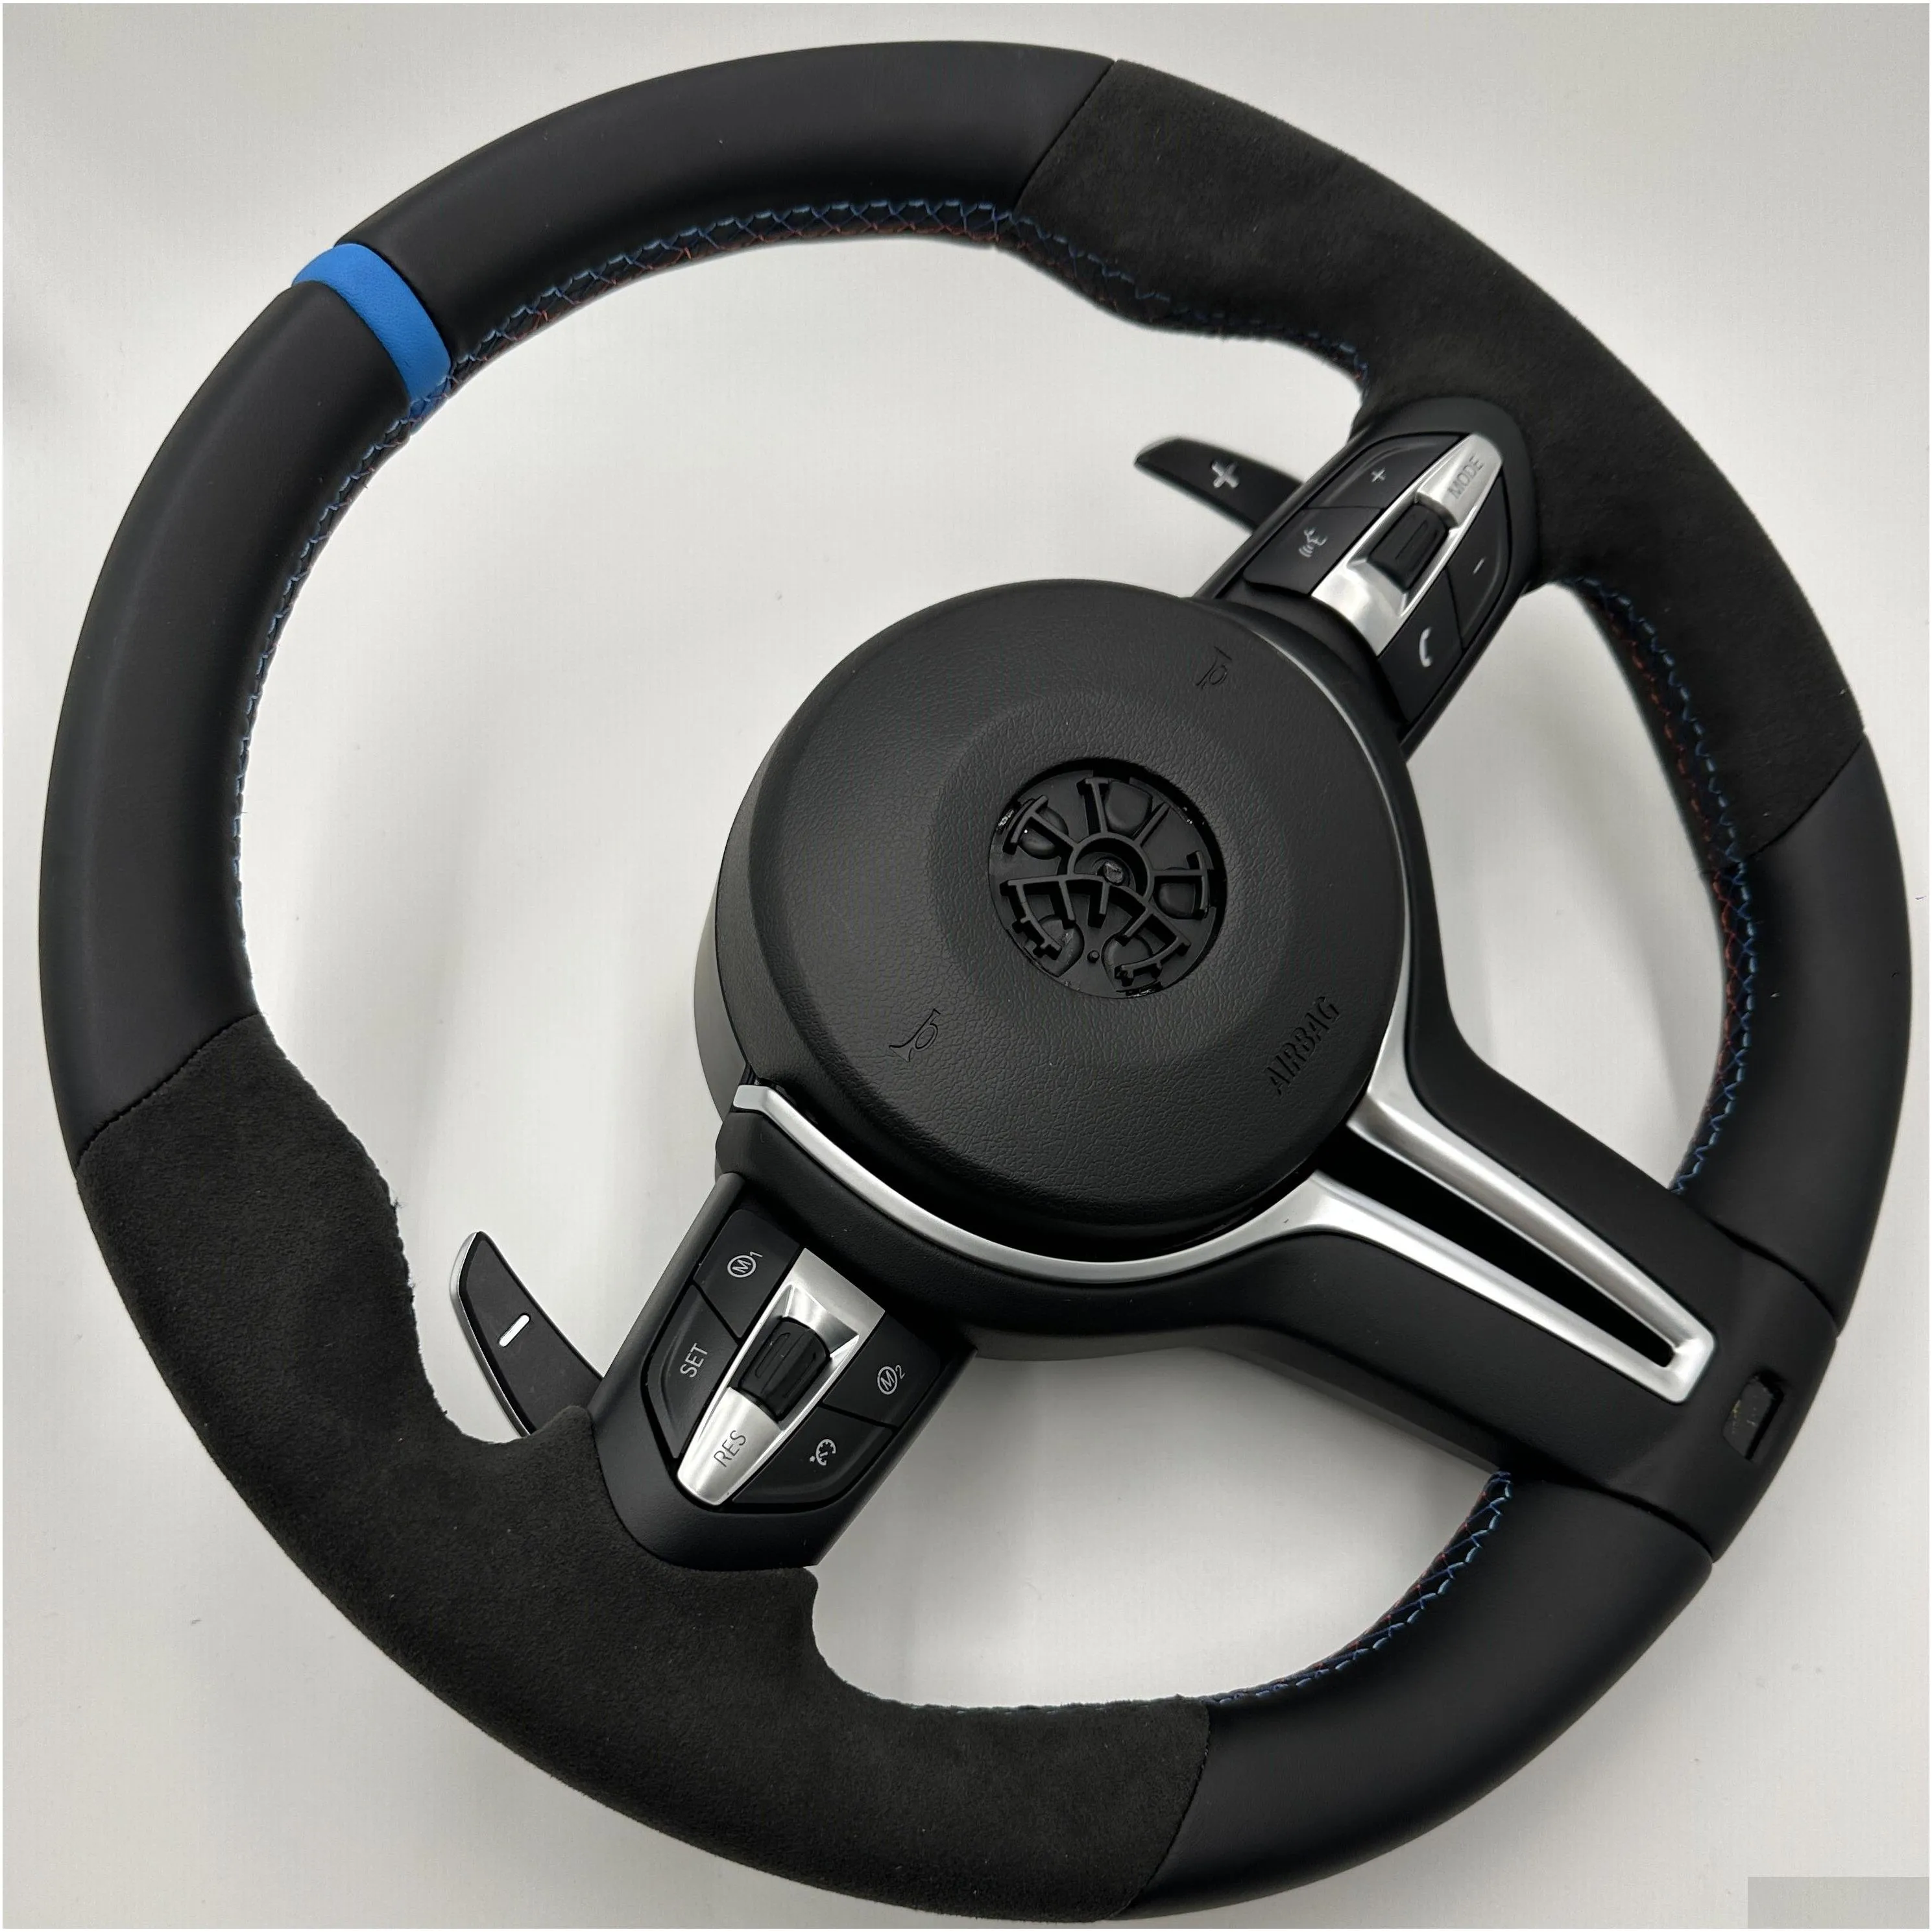 m steering wheel for bmw f01 f02 f06 f07 f10 f11 f12 f13 f14 f15 f16 f22 f30 f31 f32 f33 f34 f80 f82 f83 f85 f86 f87 x3 x4 x5